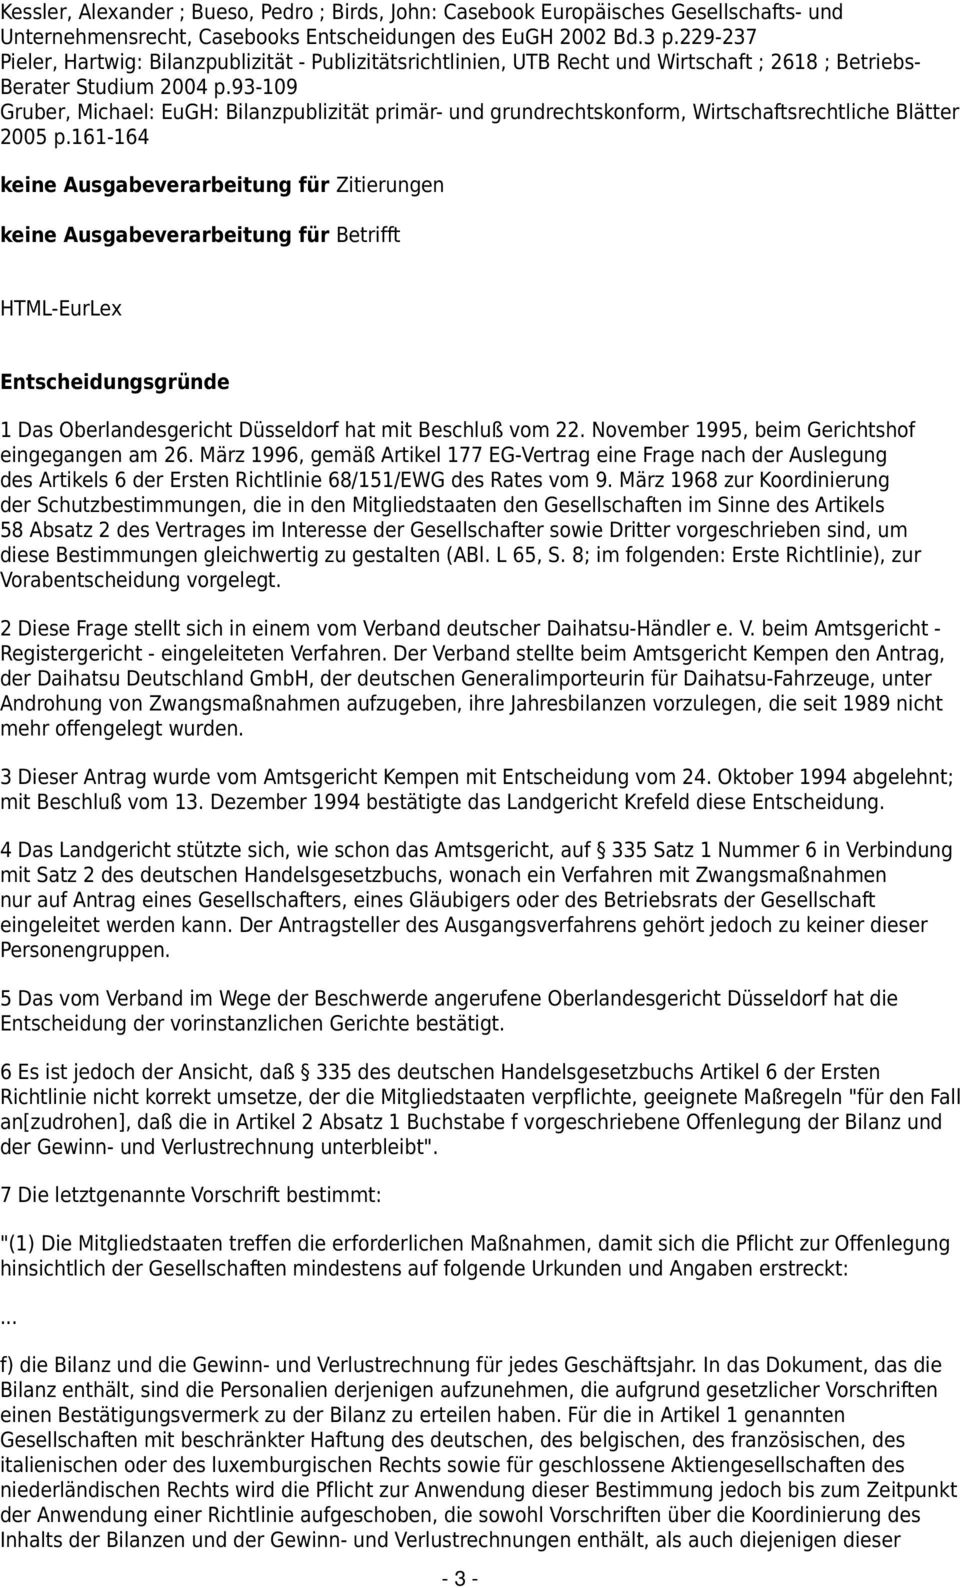 93-109 Gruber, Michael: EuGH: Bilanzpublizität primär- und grundrechtskonform, Wirtschaftsrechtliche Blätter 2005 p.